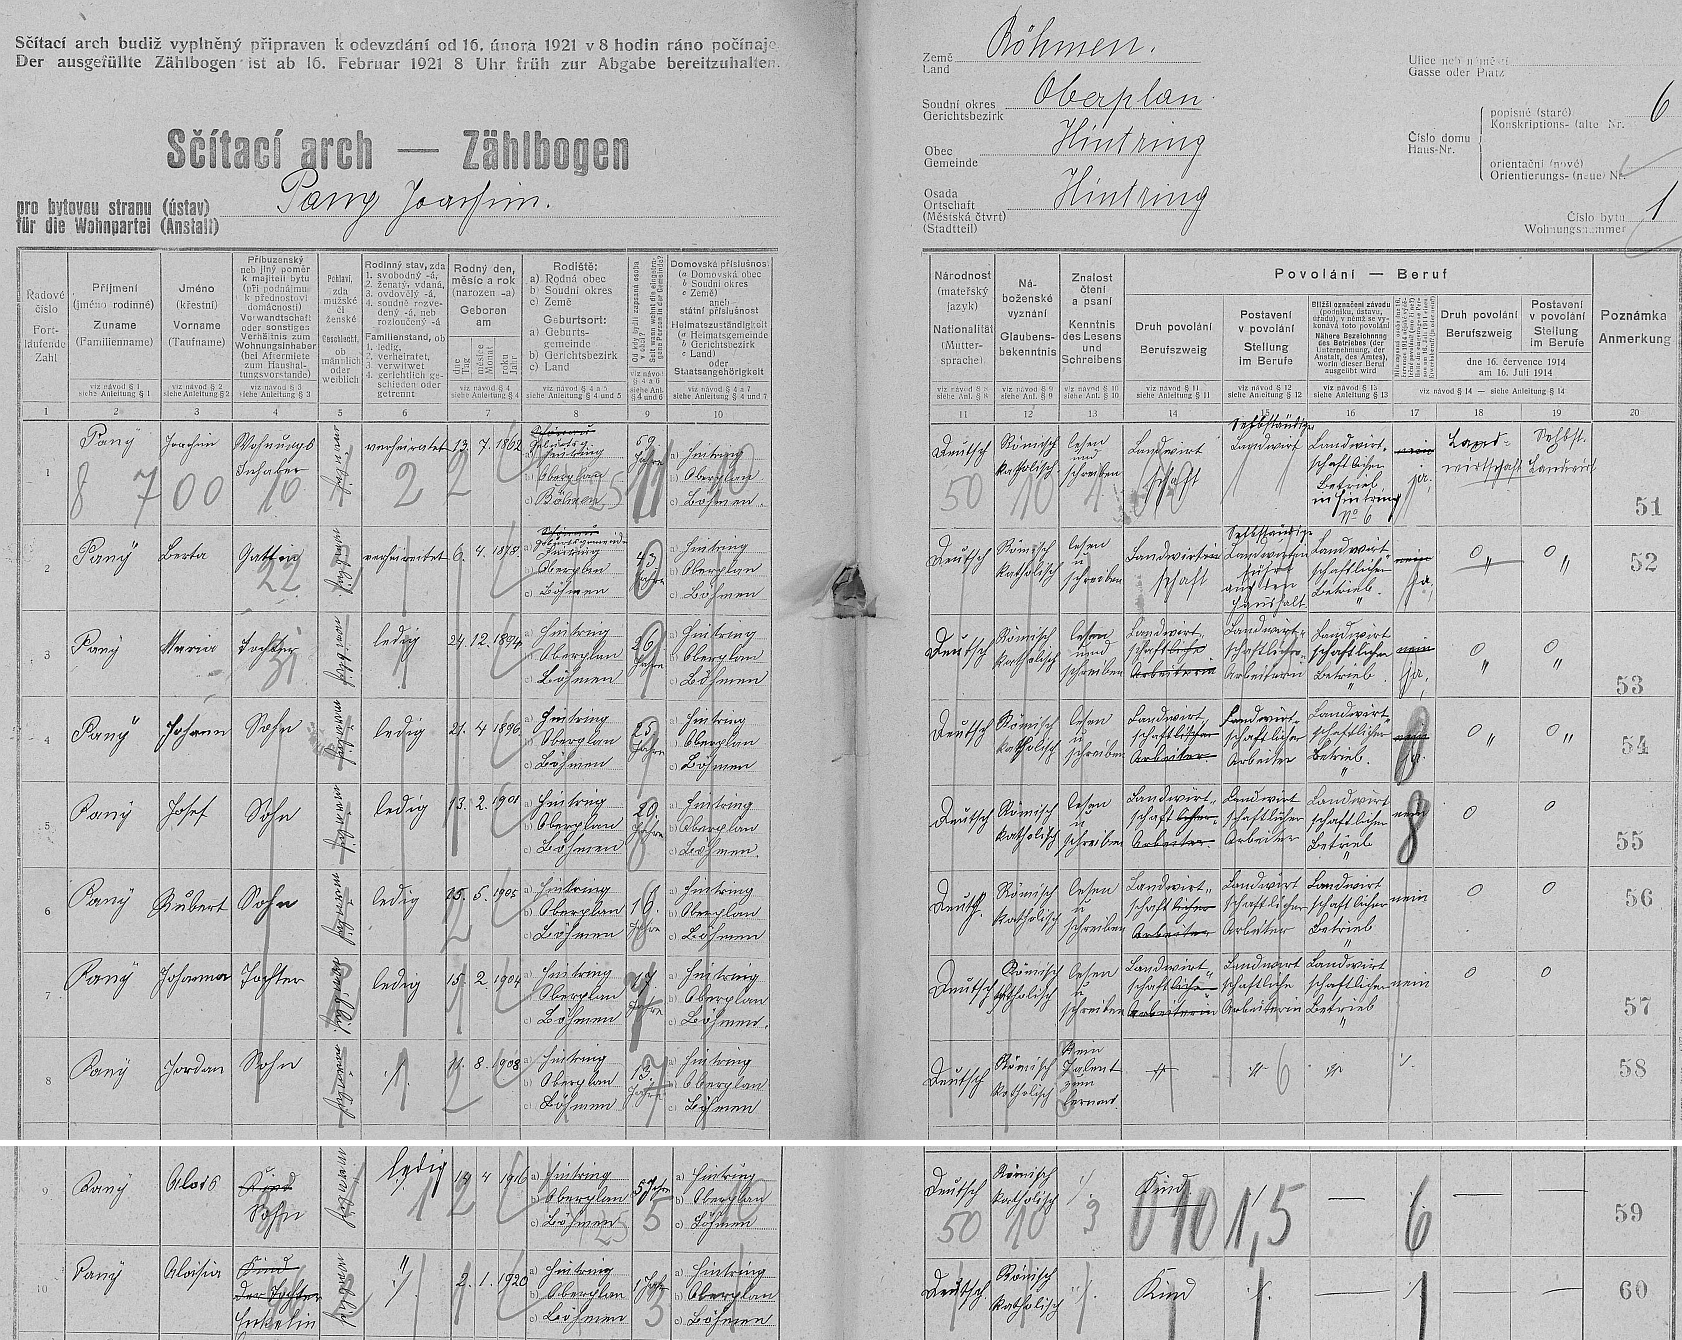 Arch (na jeden list se nevešli) sčítání lidu z roku 1921 pro stavení čp. 5 (usedlostní jméno "Zodern Häusl" si rodina přenesla do Pěkné čp. 47, tj. rodného stavení Robertova) v Záhvozdí (Hintring) s početnou rodinou Joachima Panyho (*13. července 1862 v Záhvozdí) a jeho ženy Berty (*6. dubna 1878 v Šenavě), kde mezi 8 ratolestmi figuruje i Robertův otec Josef (*13. února 1901 v Záhvozdí)